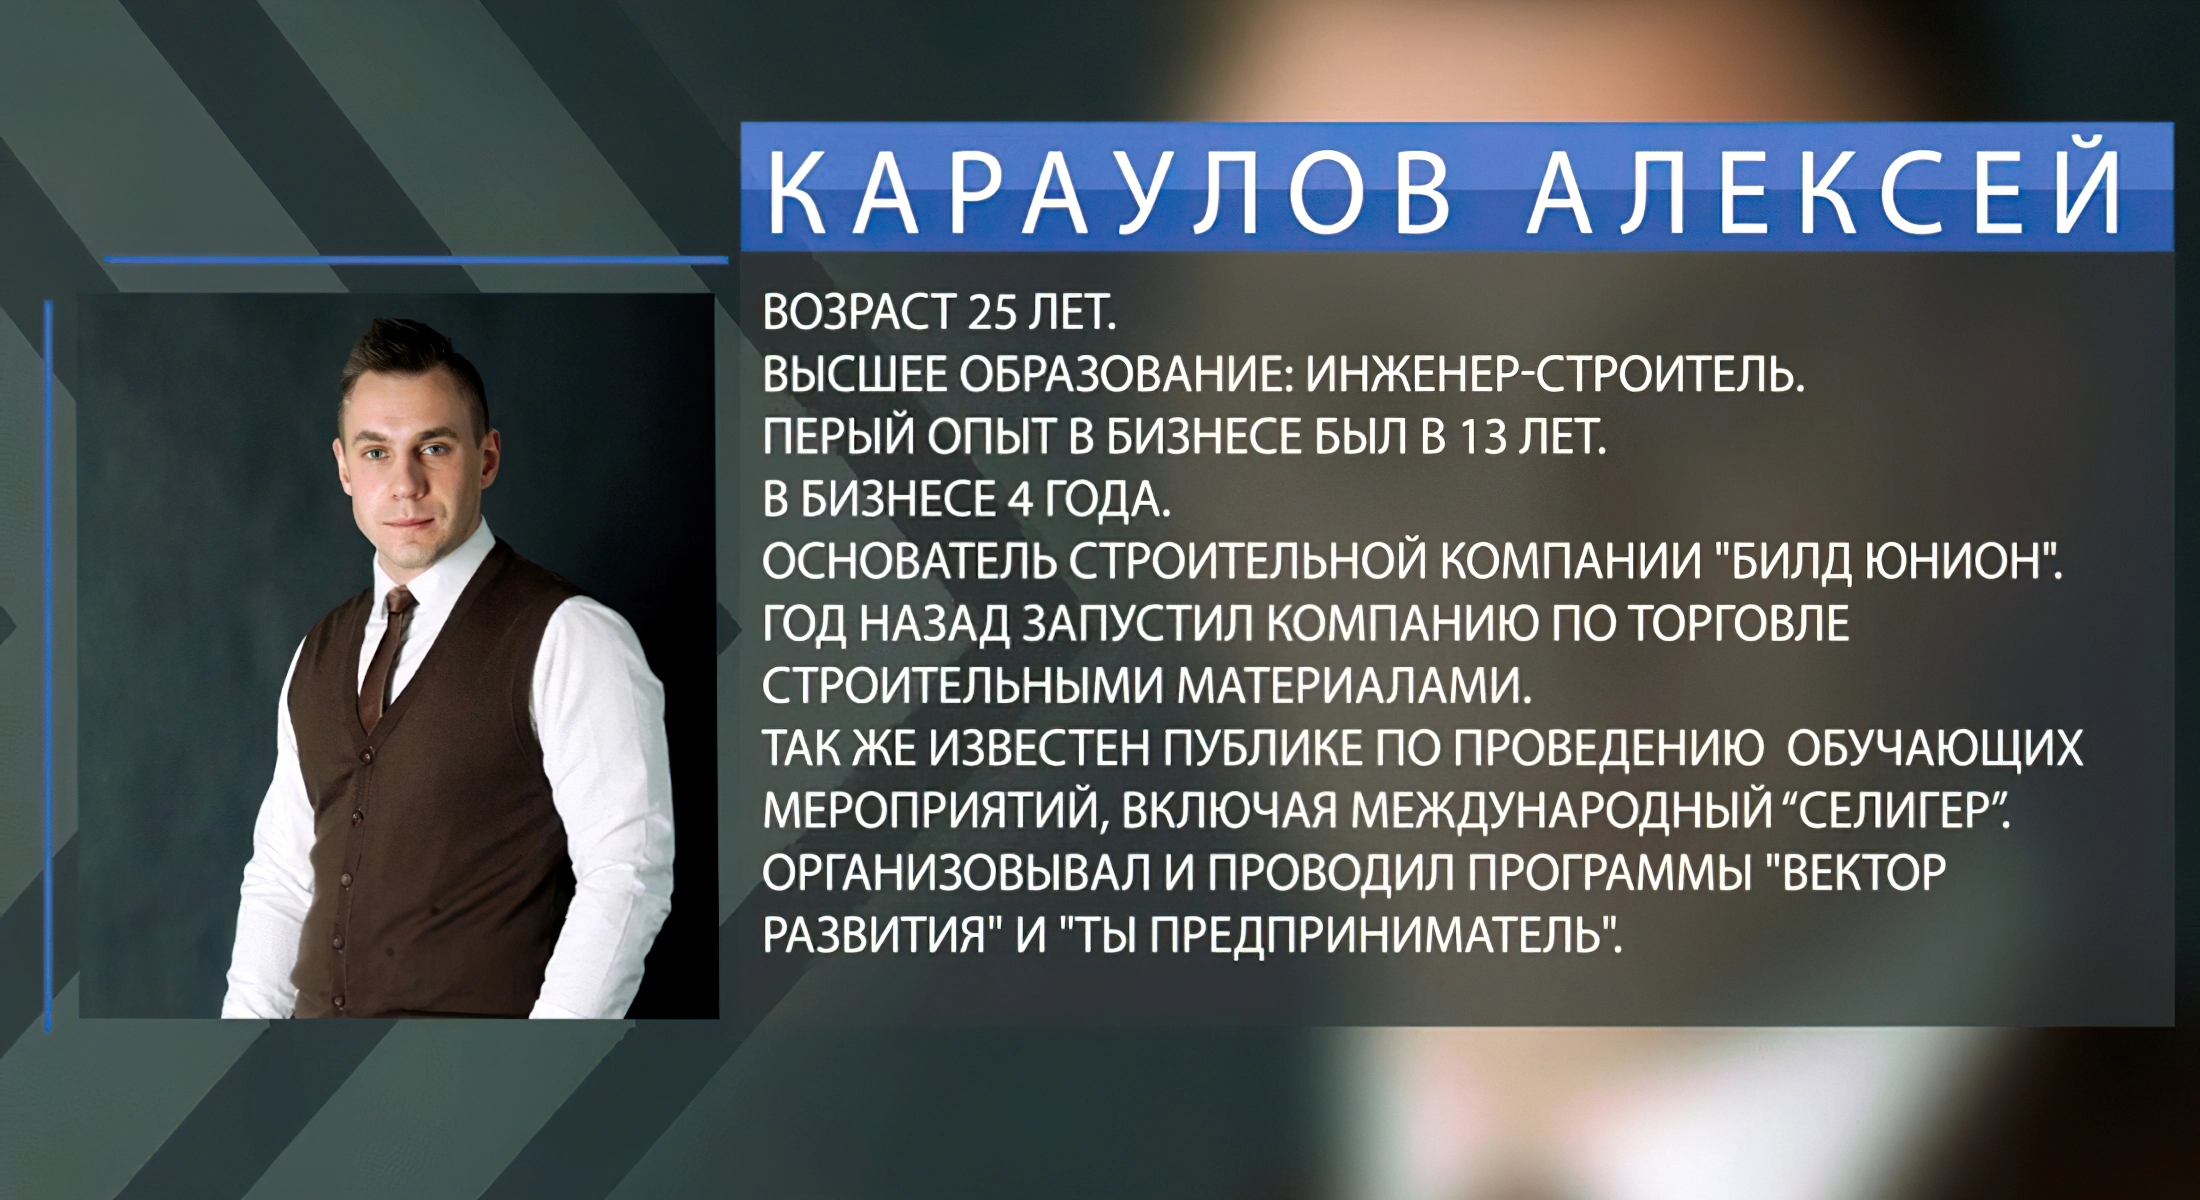 Алексей Караулов - ведущий передачи «Бизнес Поколение»